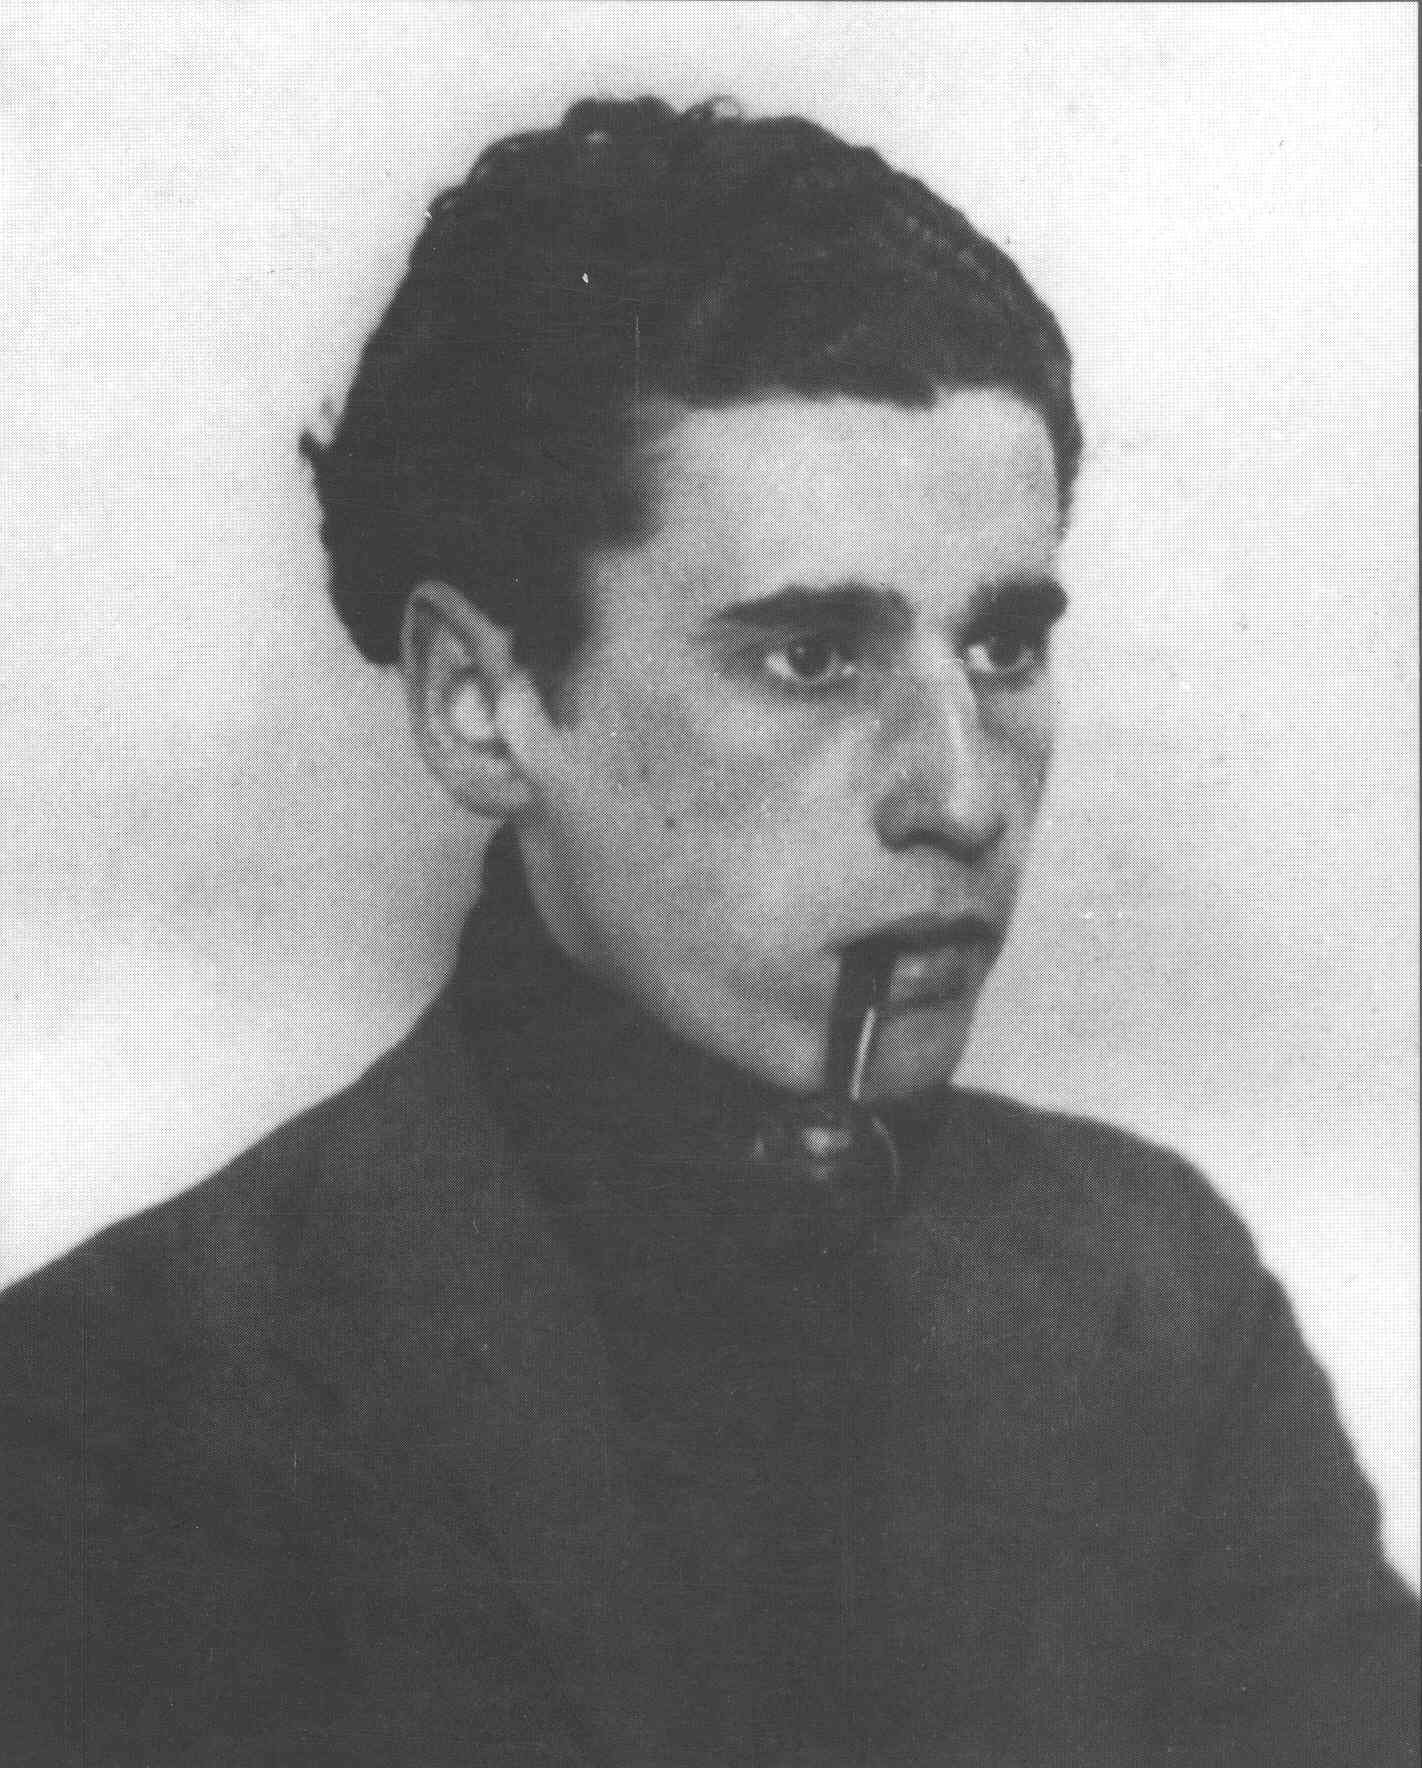 NIKOLAS LEKUONA JAIO ZENEKO MENDEURRENA (1913-2013)